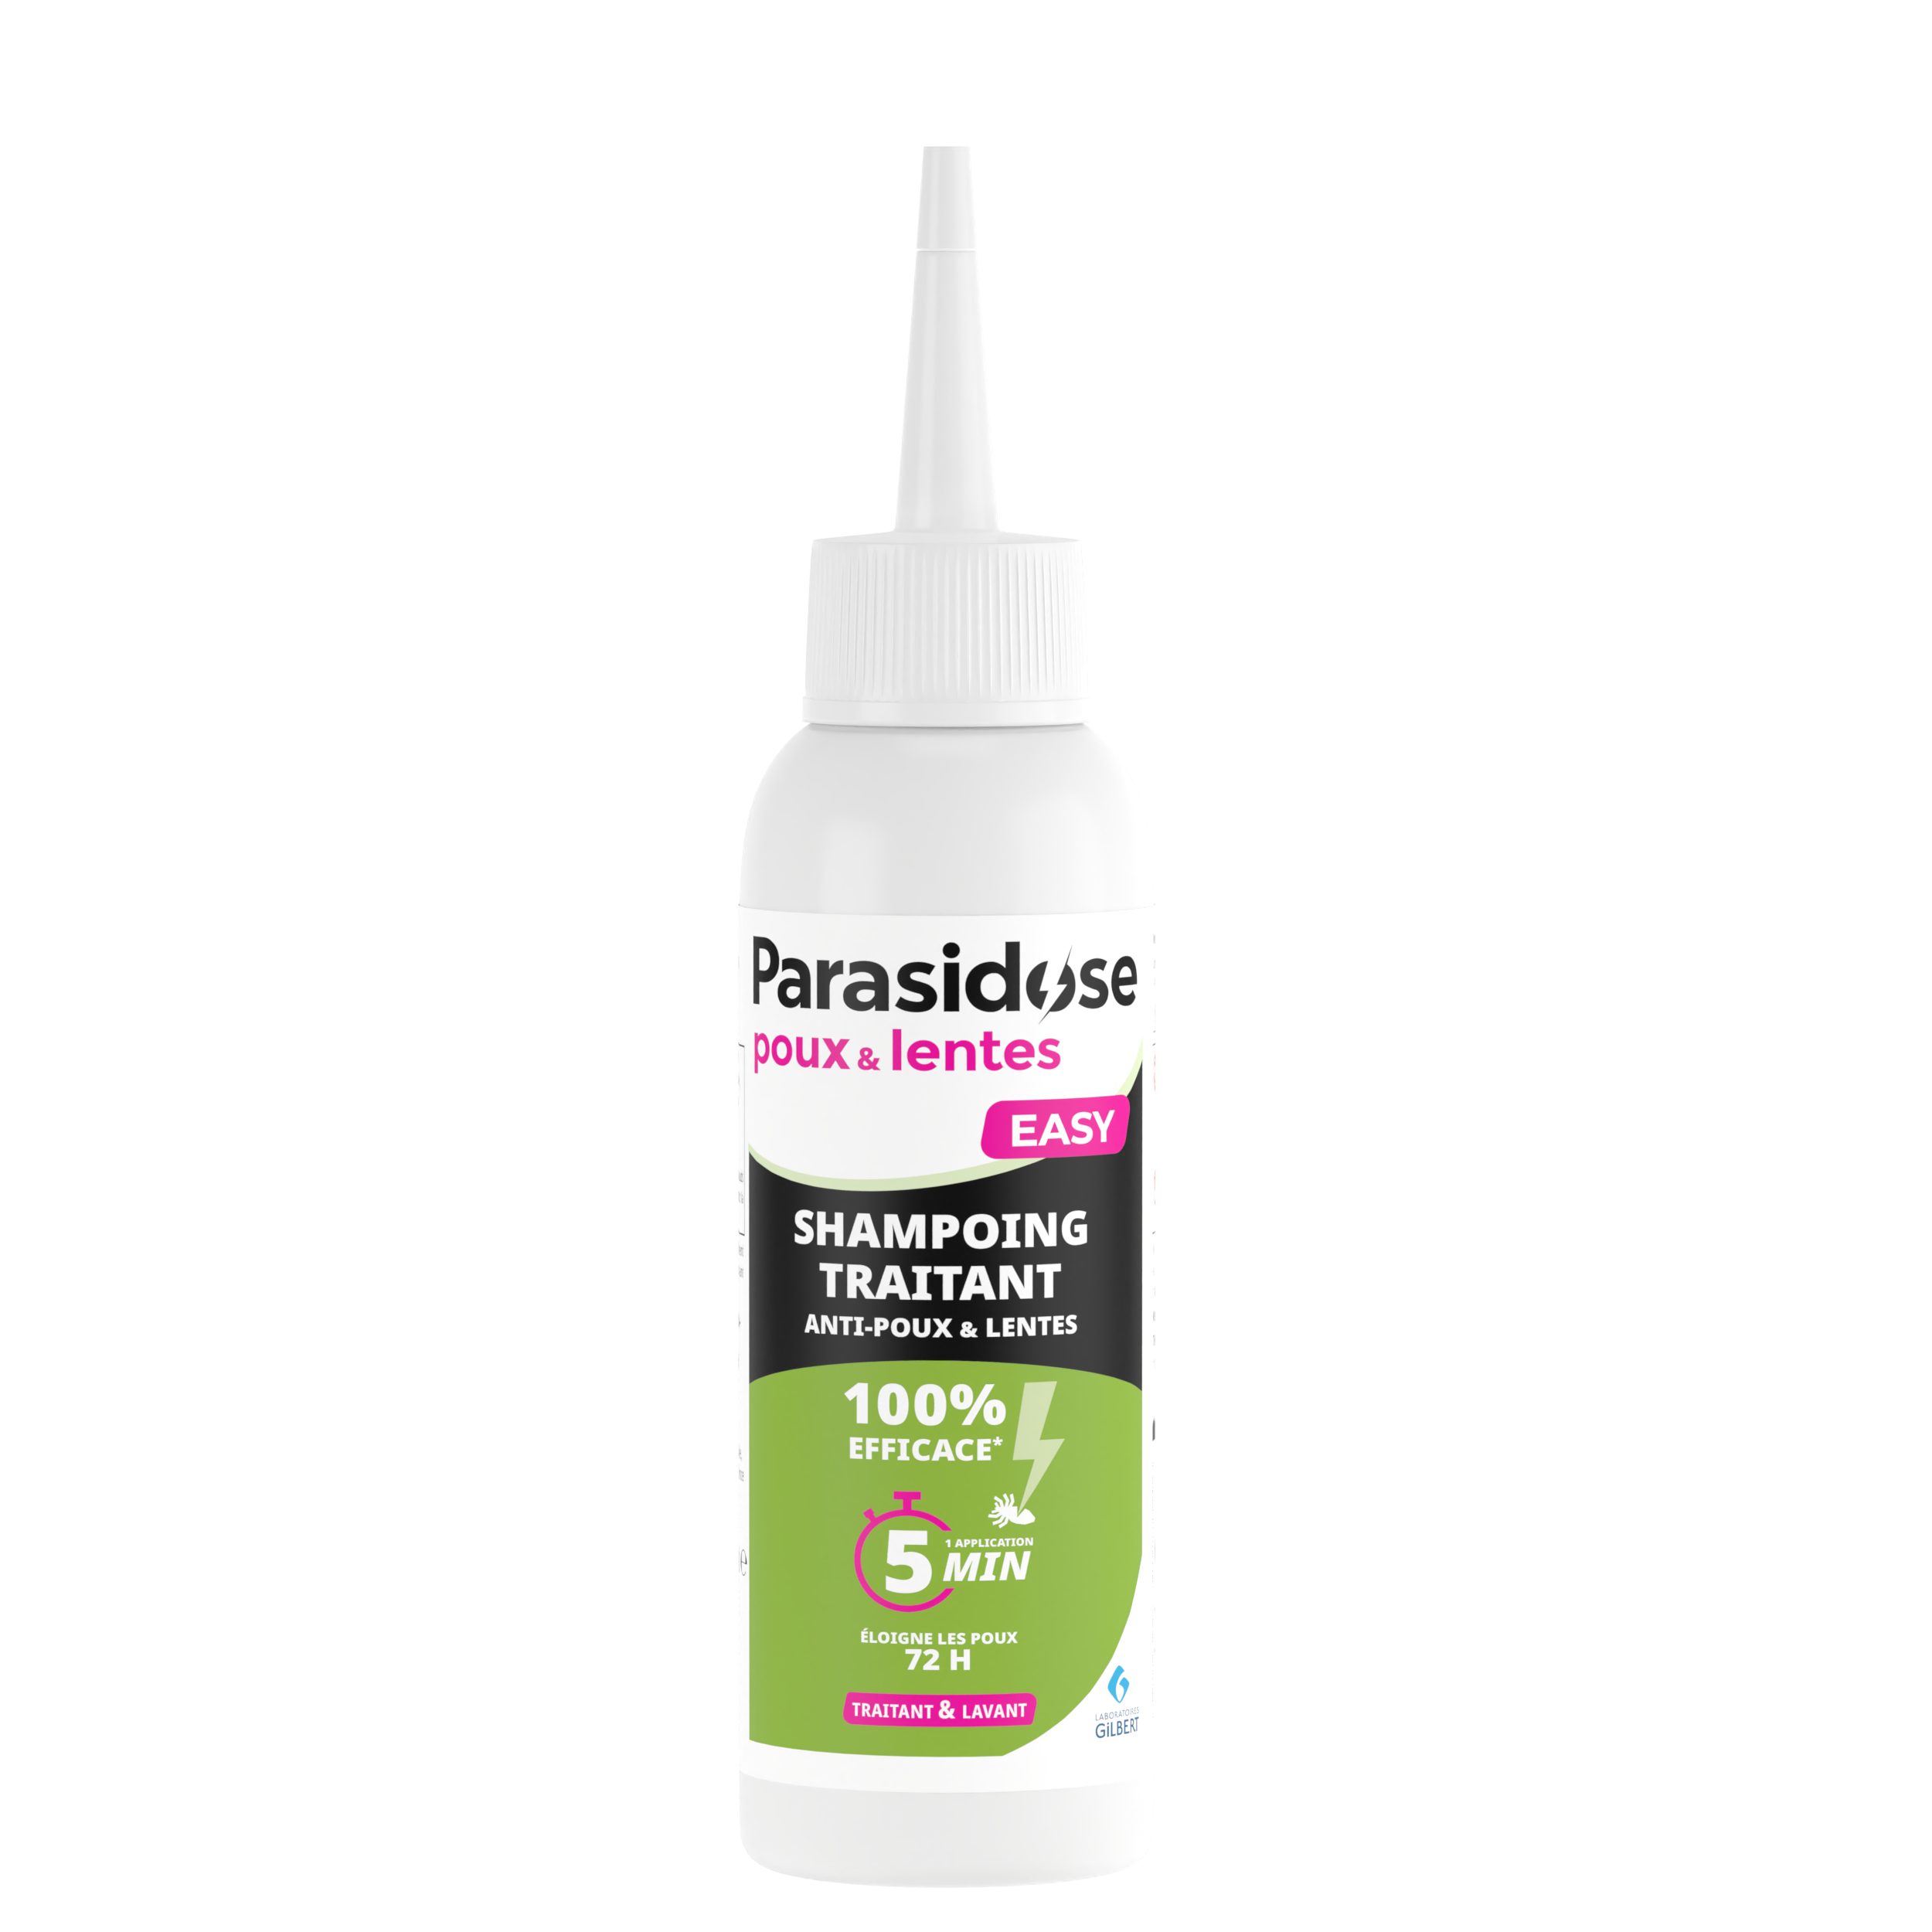 Shampoing traitant anti-poux & lentes - Parasidose